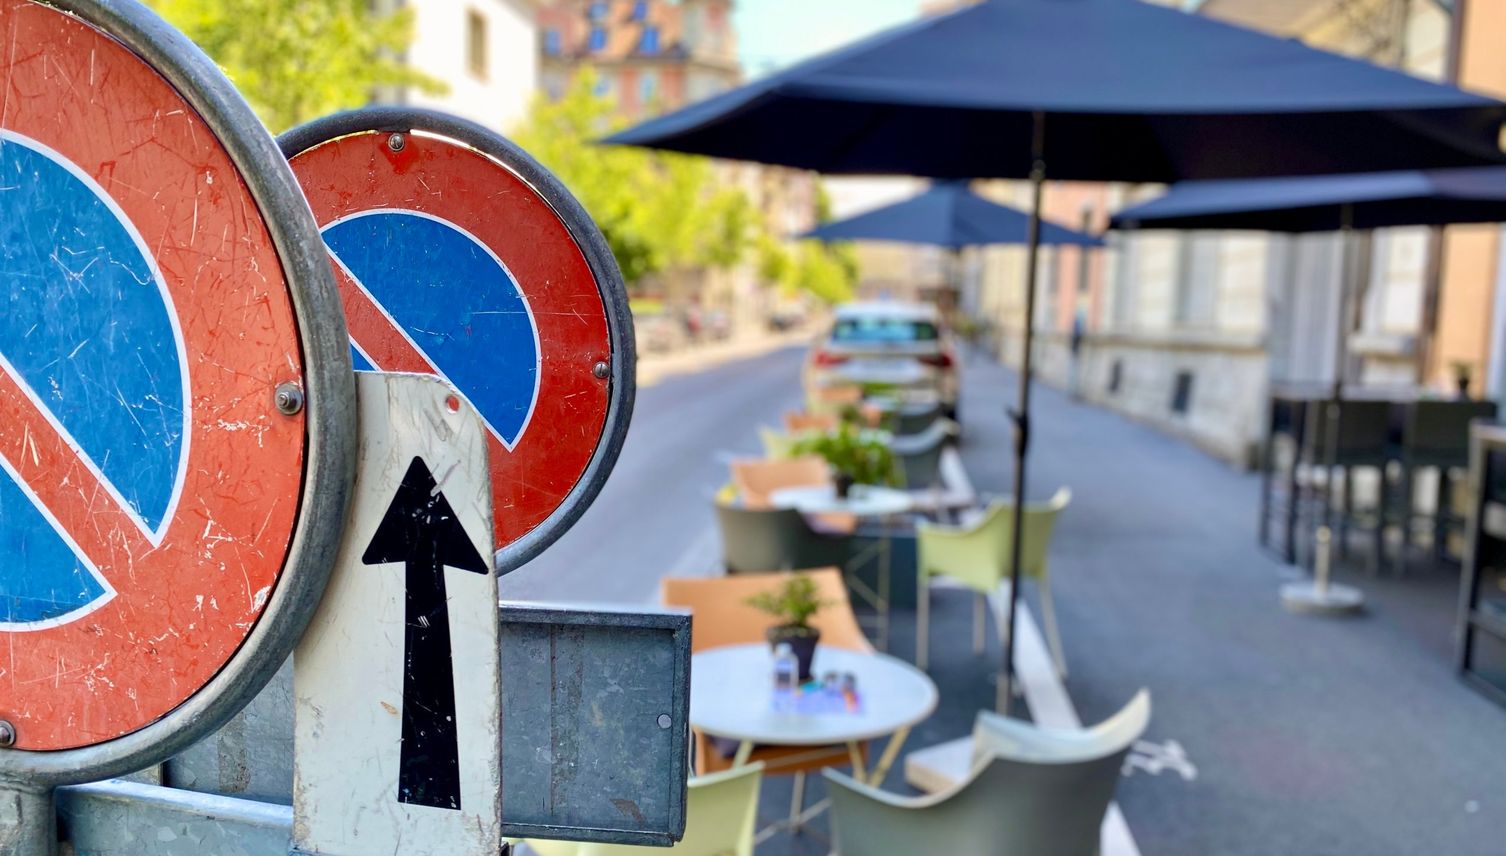 Luzerner Restaurants besetzen Parkplätze – auch wenn sie keine Gäste bedienen